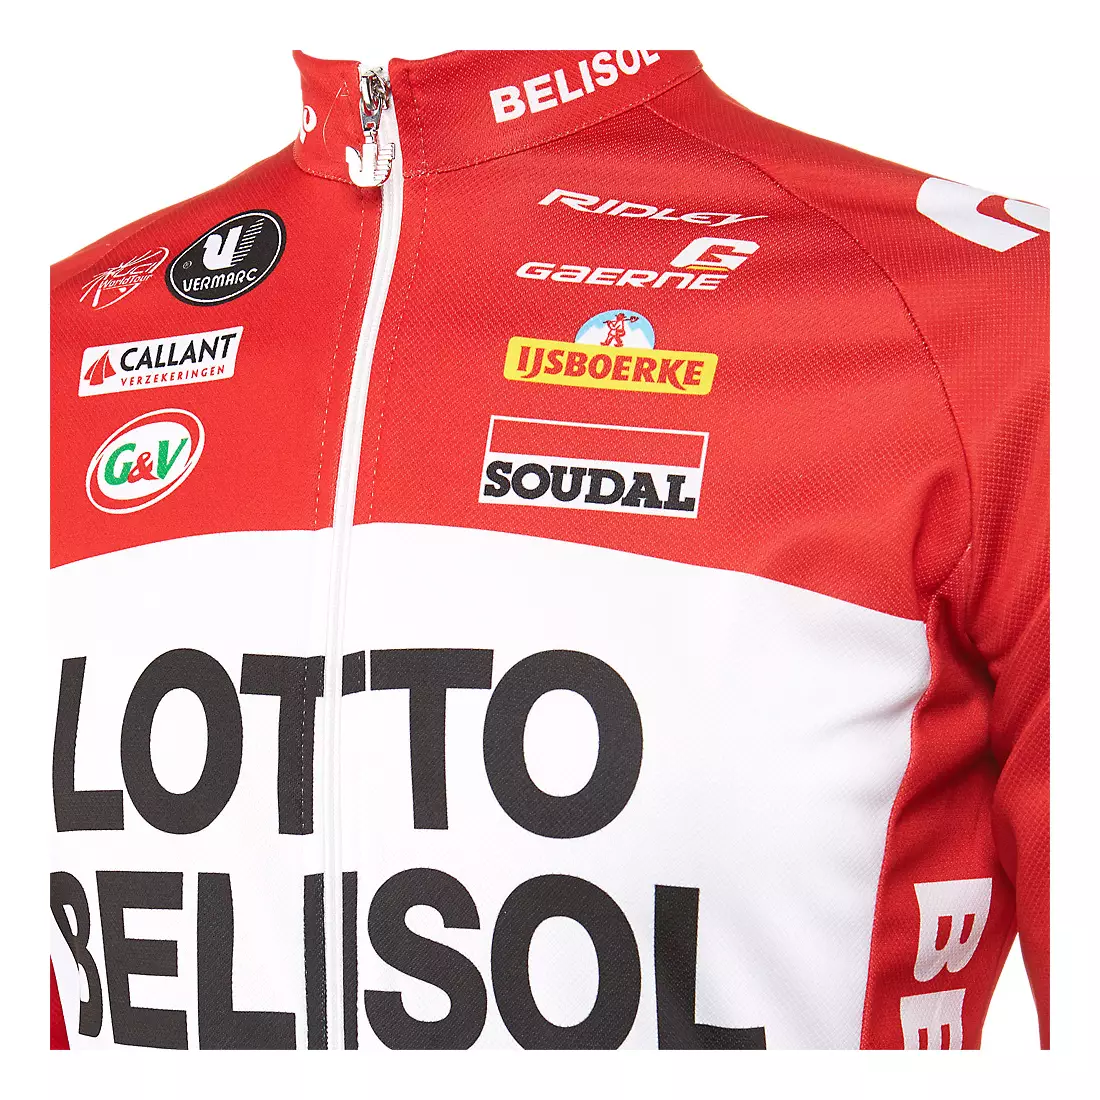 VERMARC - LOTTO BELISOL 2014 Radsport-Sweatshirt